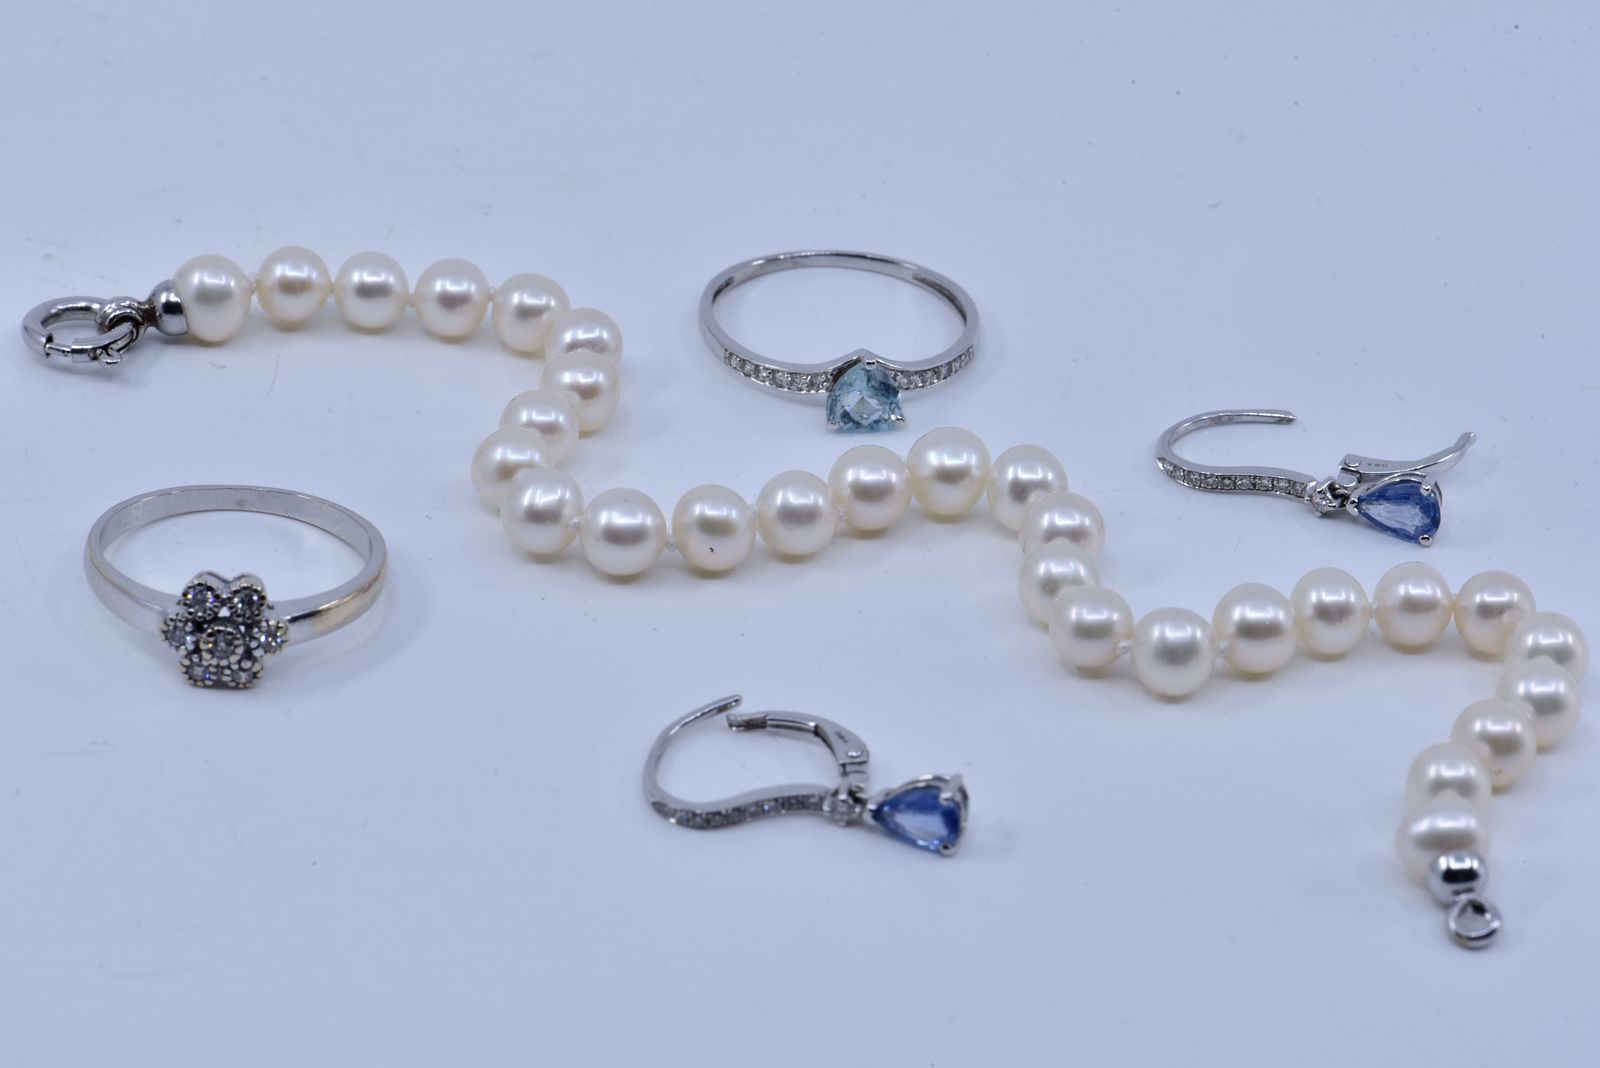 Null 
	镶嵌有心形刻面蓝宝石的小戒指。

戒指上镶嵌的小型明亮式切割钻石组合成一个花环。

一对耳环，每只都镶嵌着一颗梨形的蓝色宝石，镶嵌物上装饰着白色的&hellip;